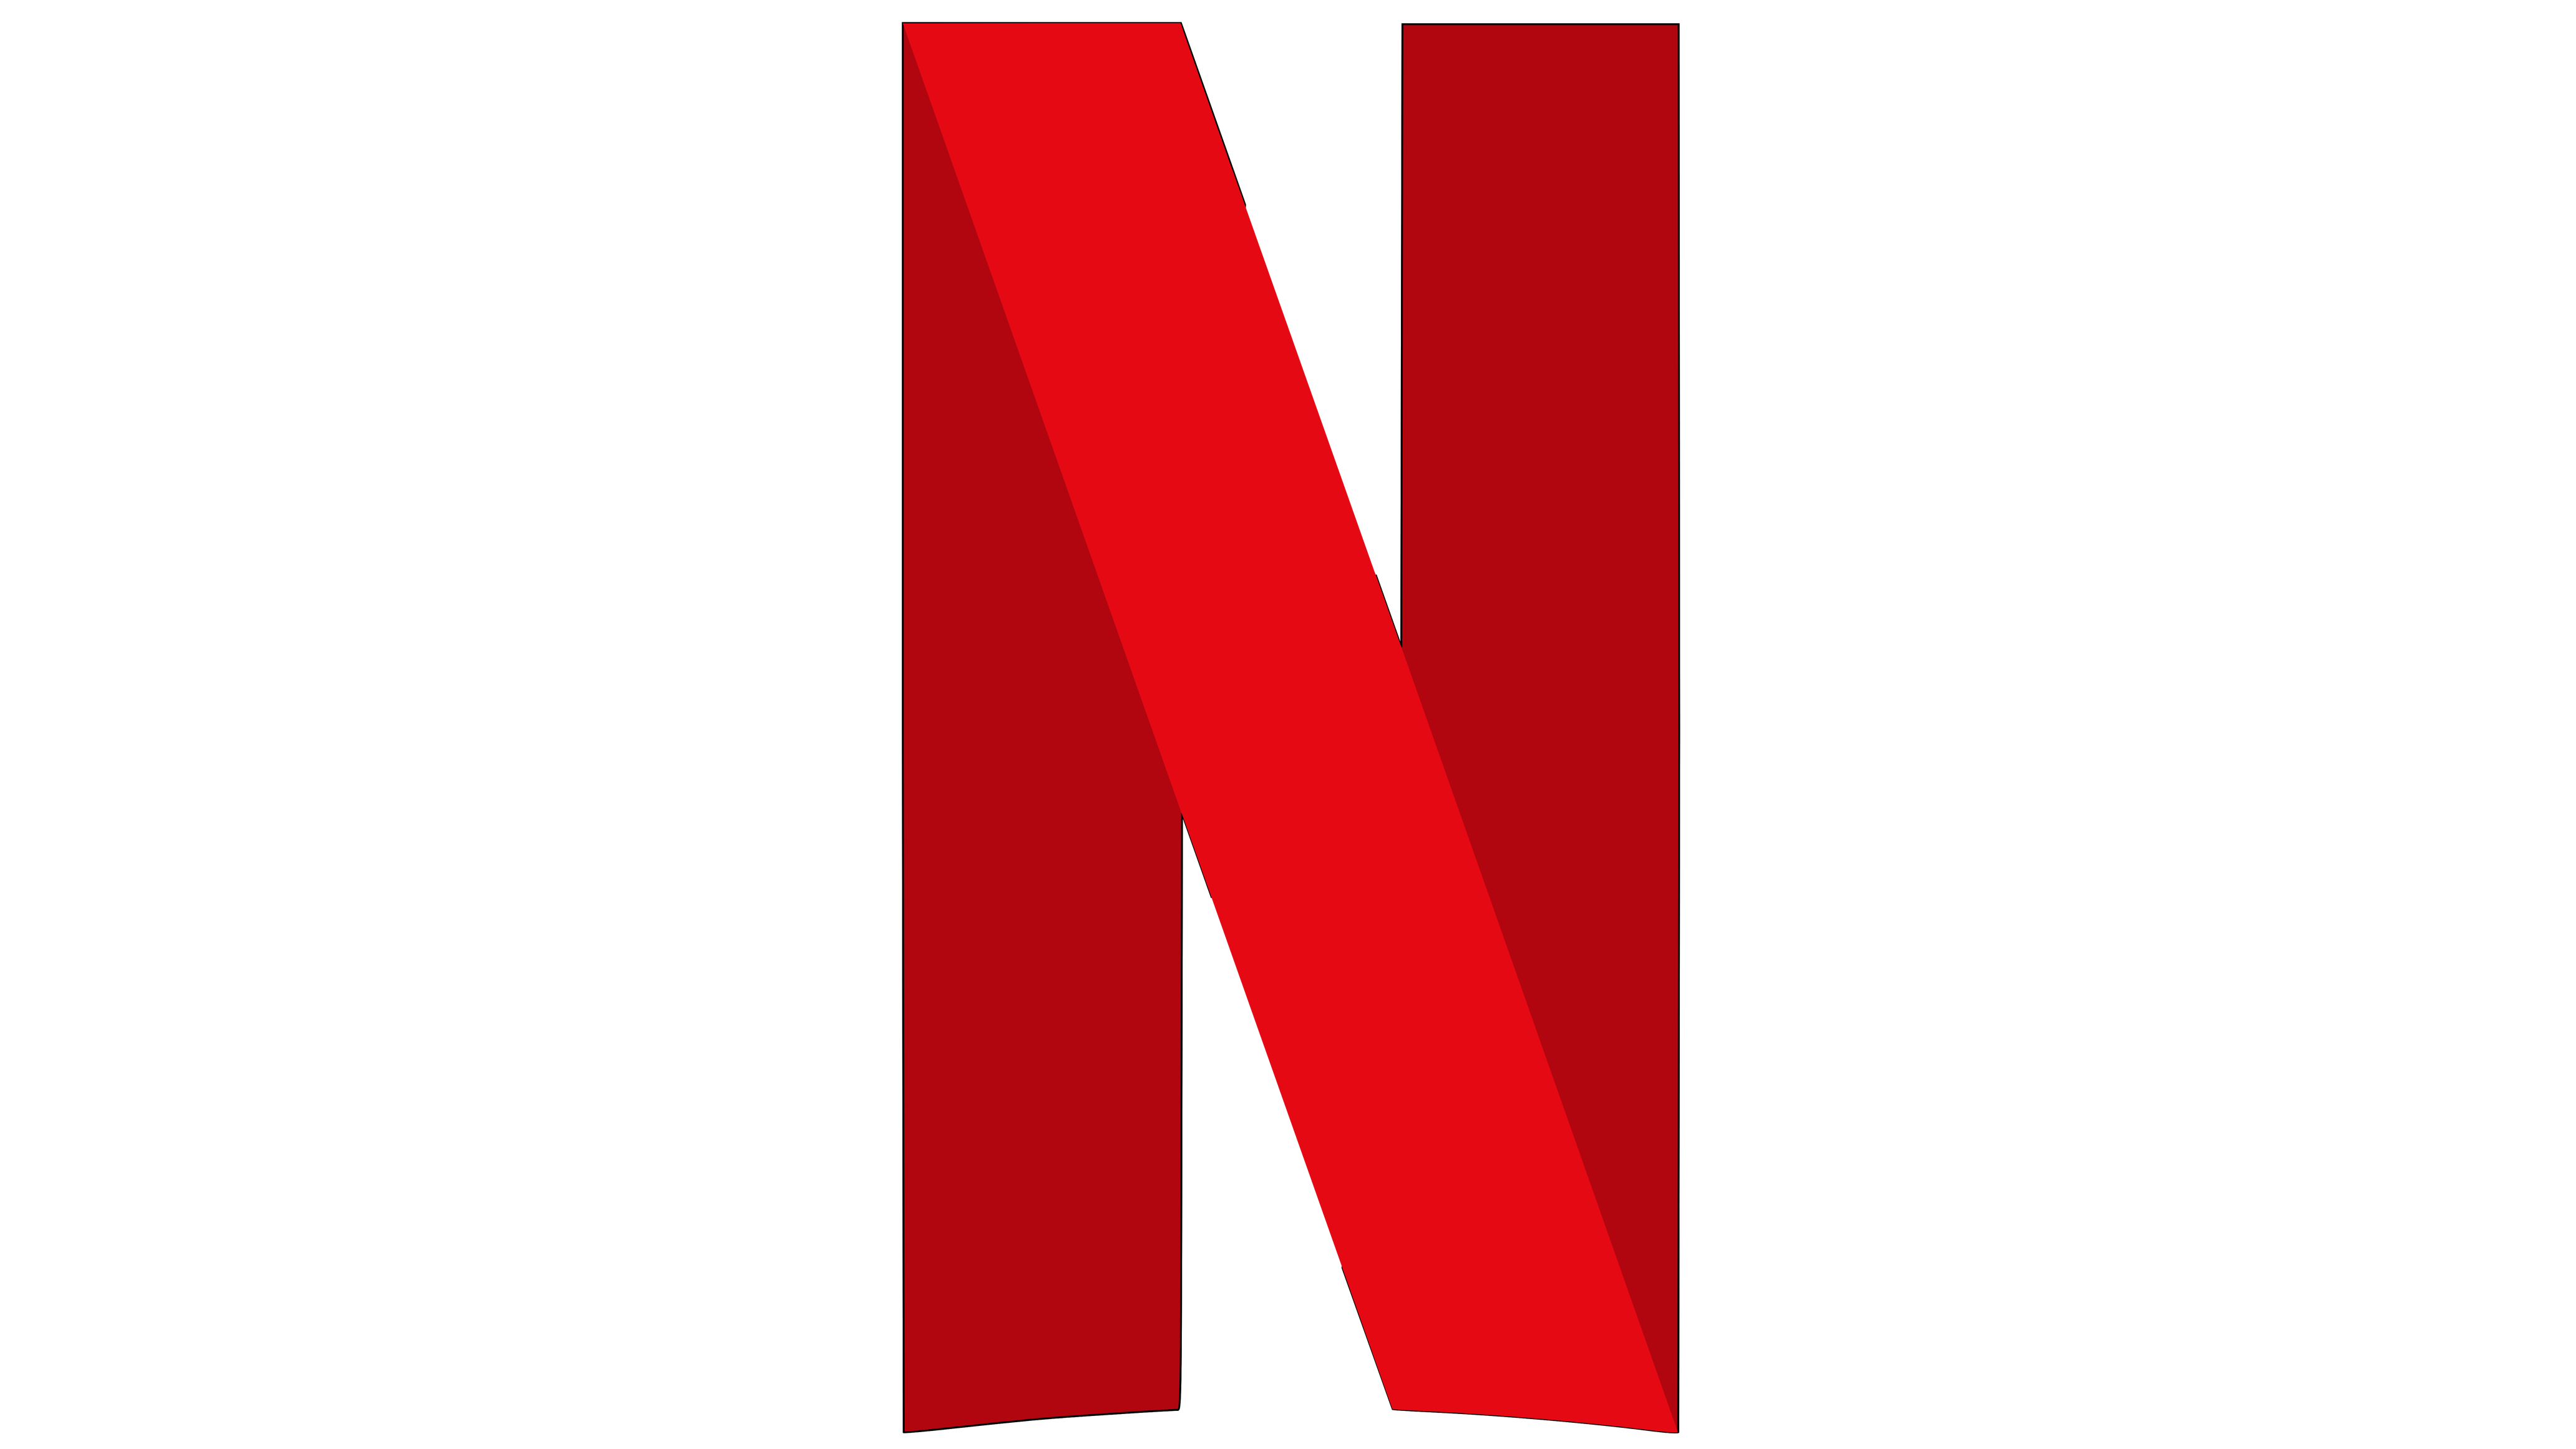 Nrtflixs Logo - Netflix Logo Transparent & PNG Clipart Free Download - YA-webdesign